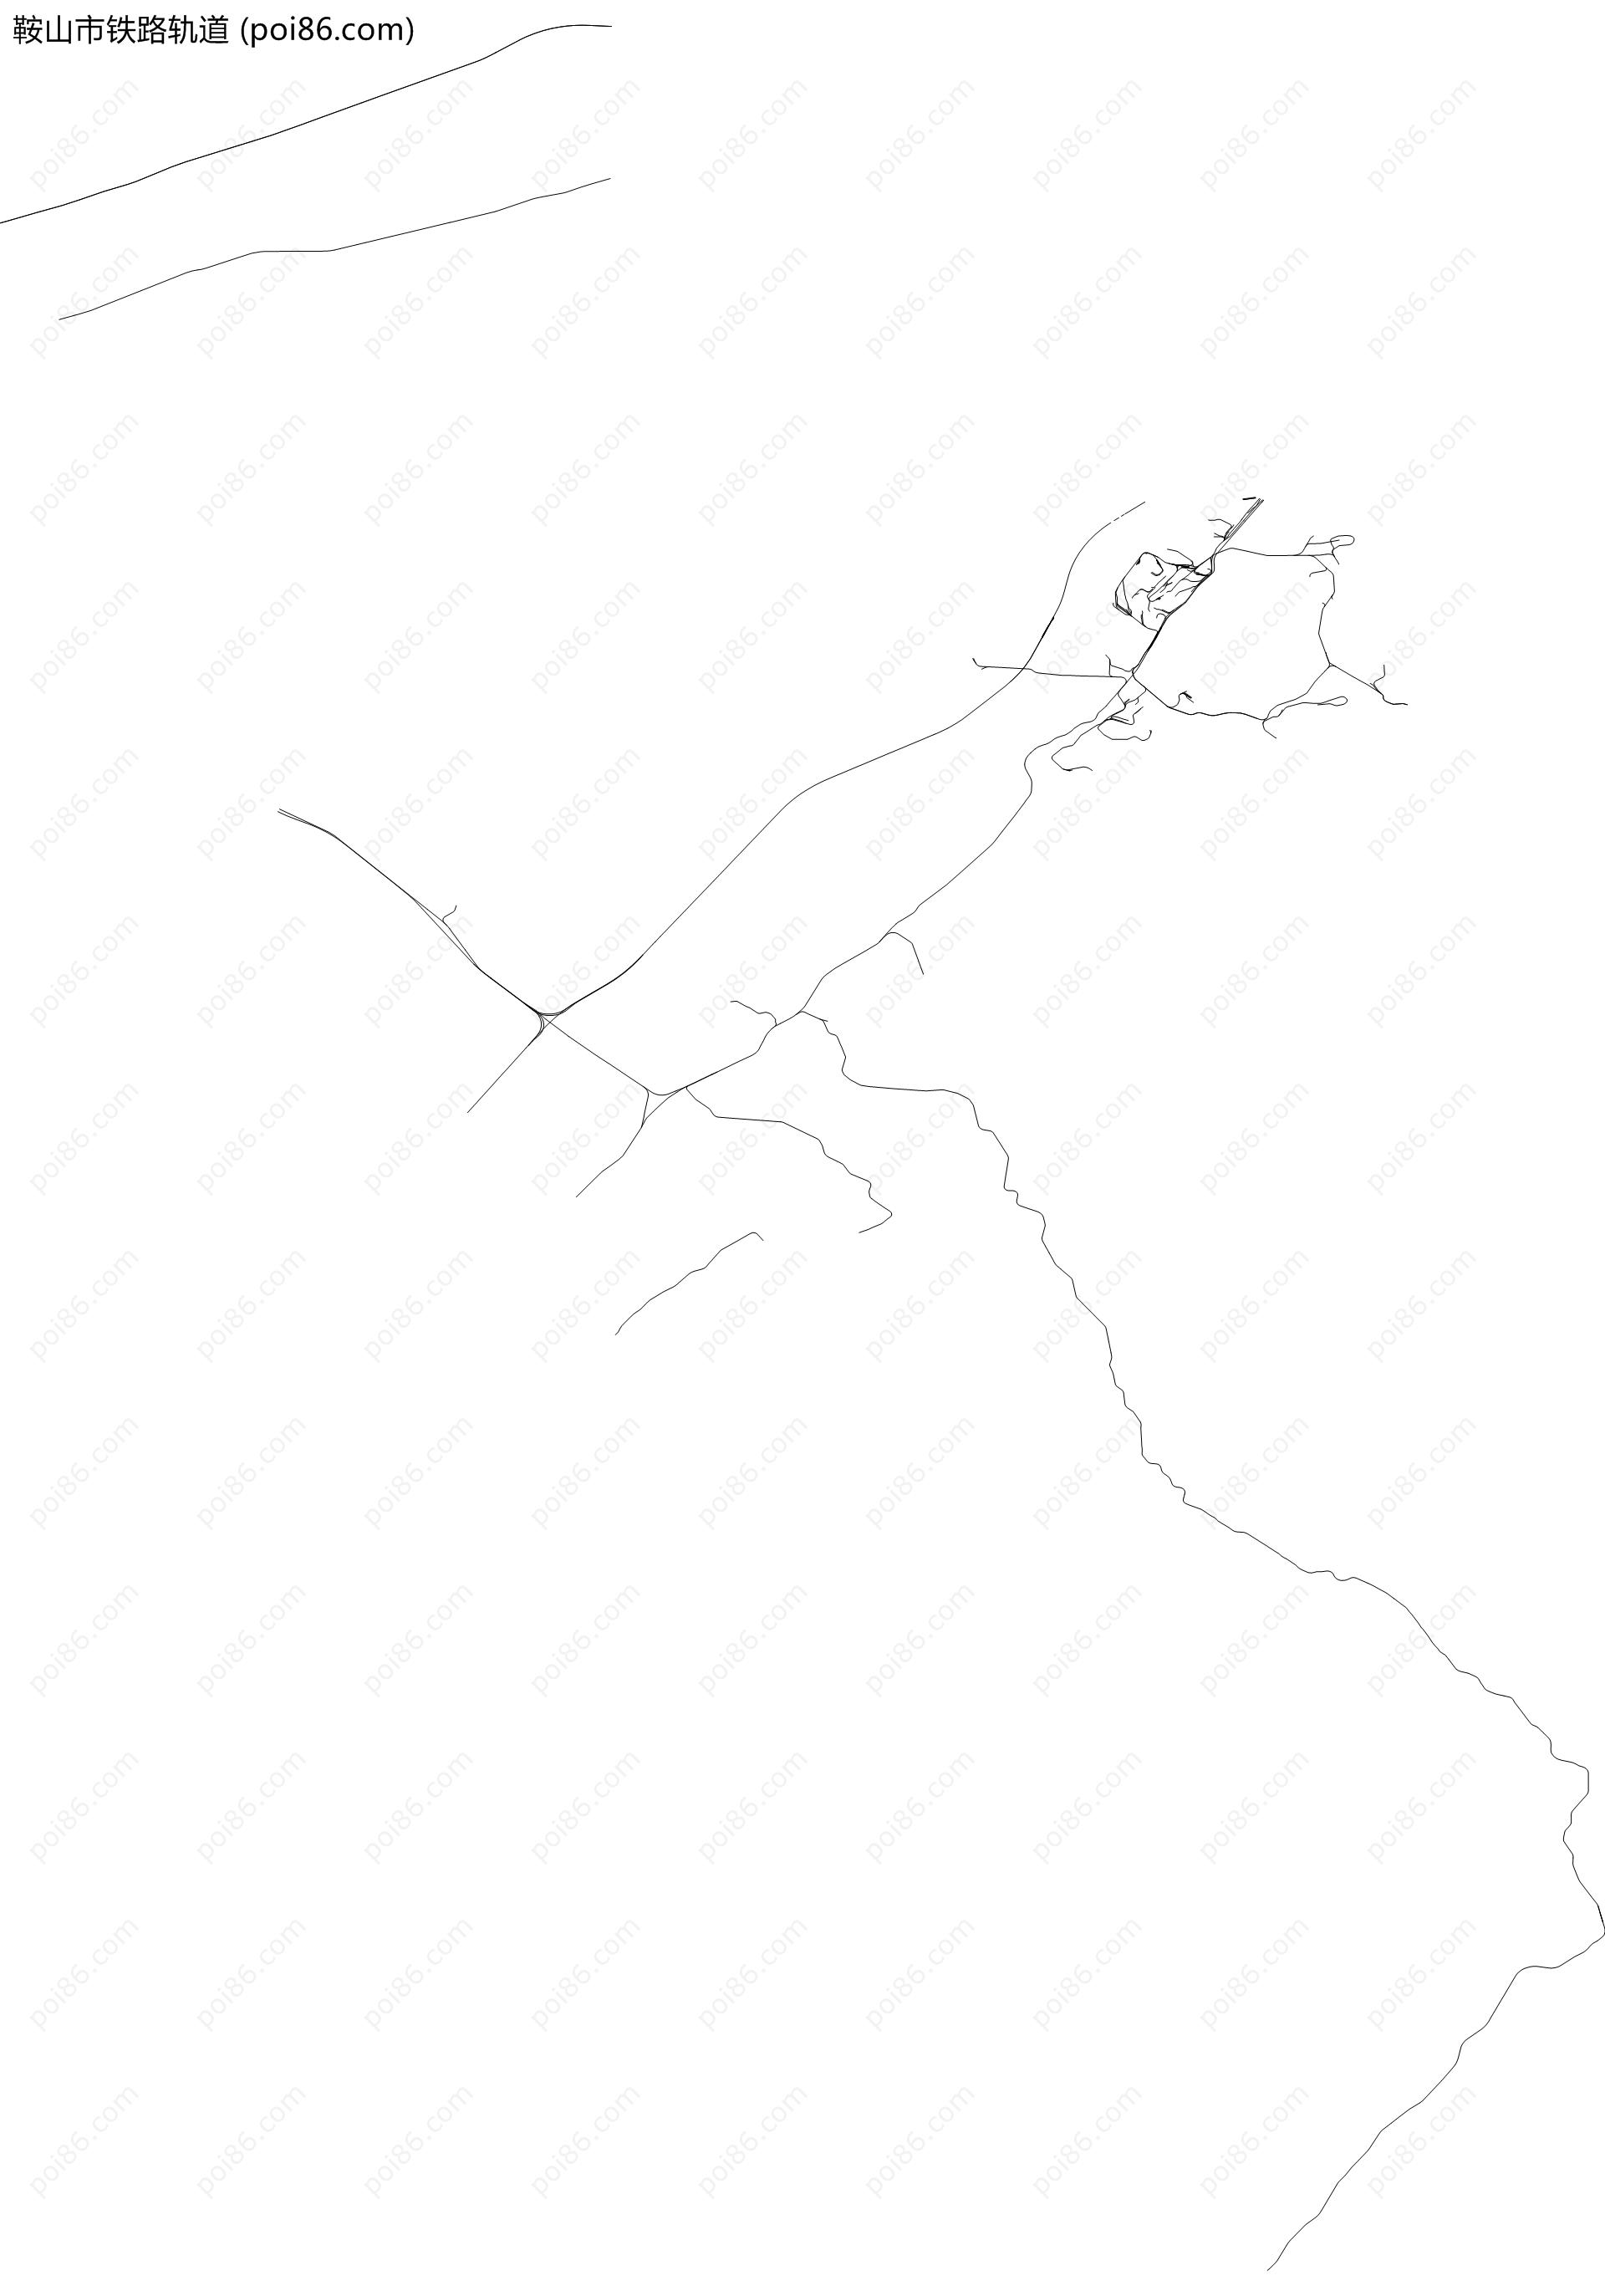 鞍山市铁路轨道地图